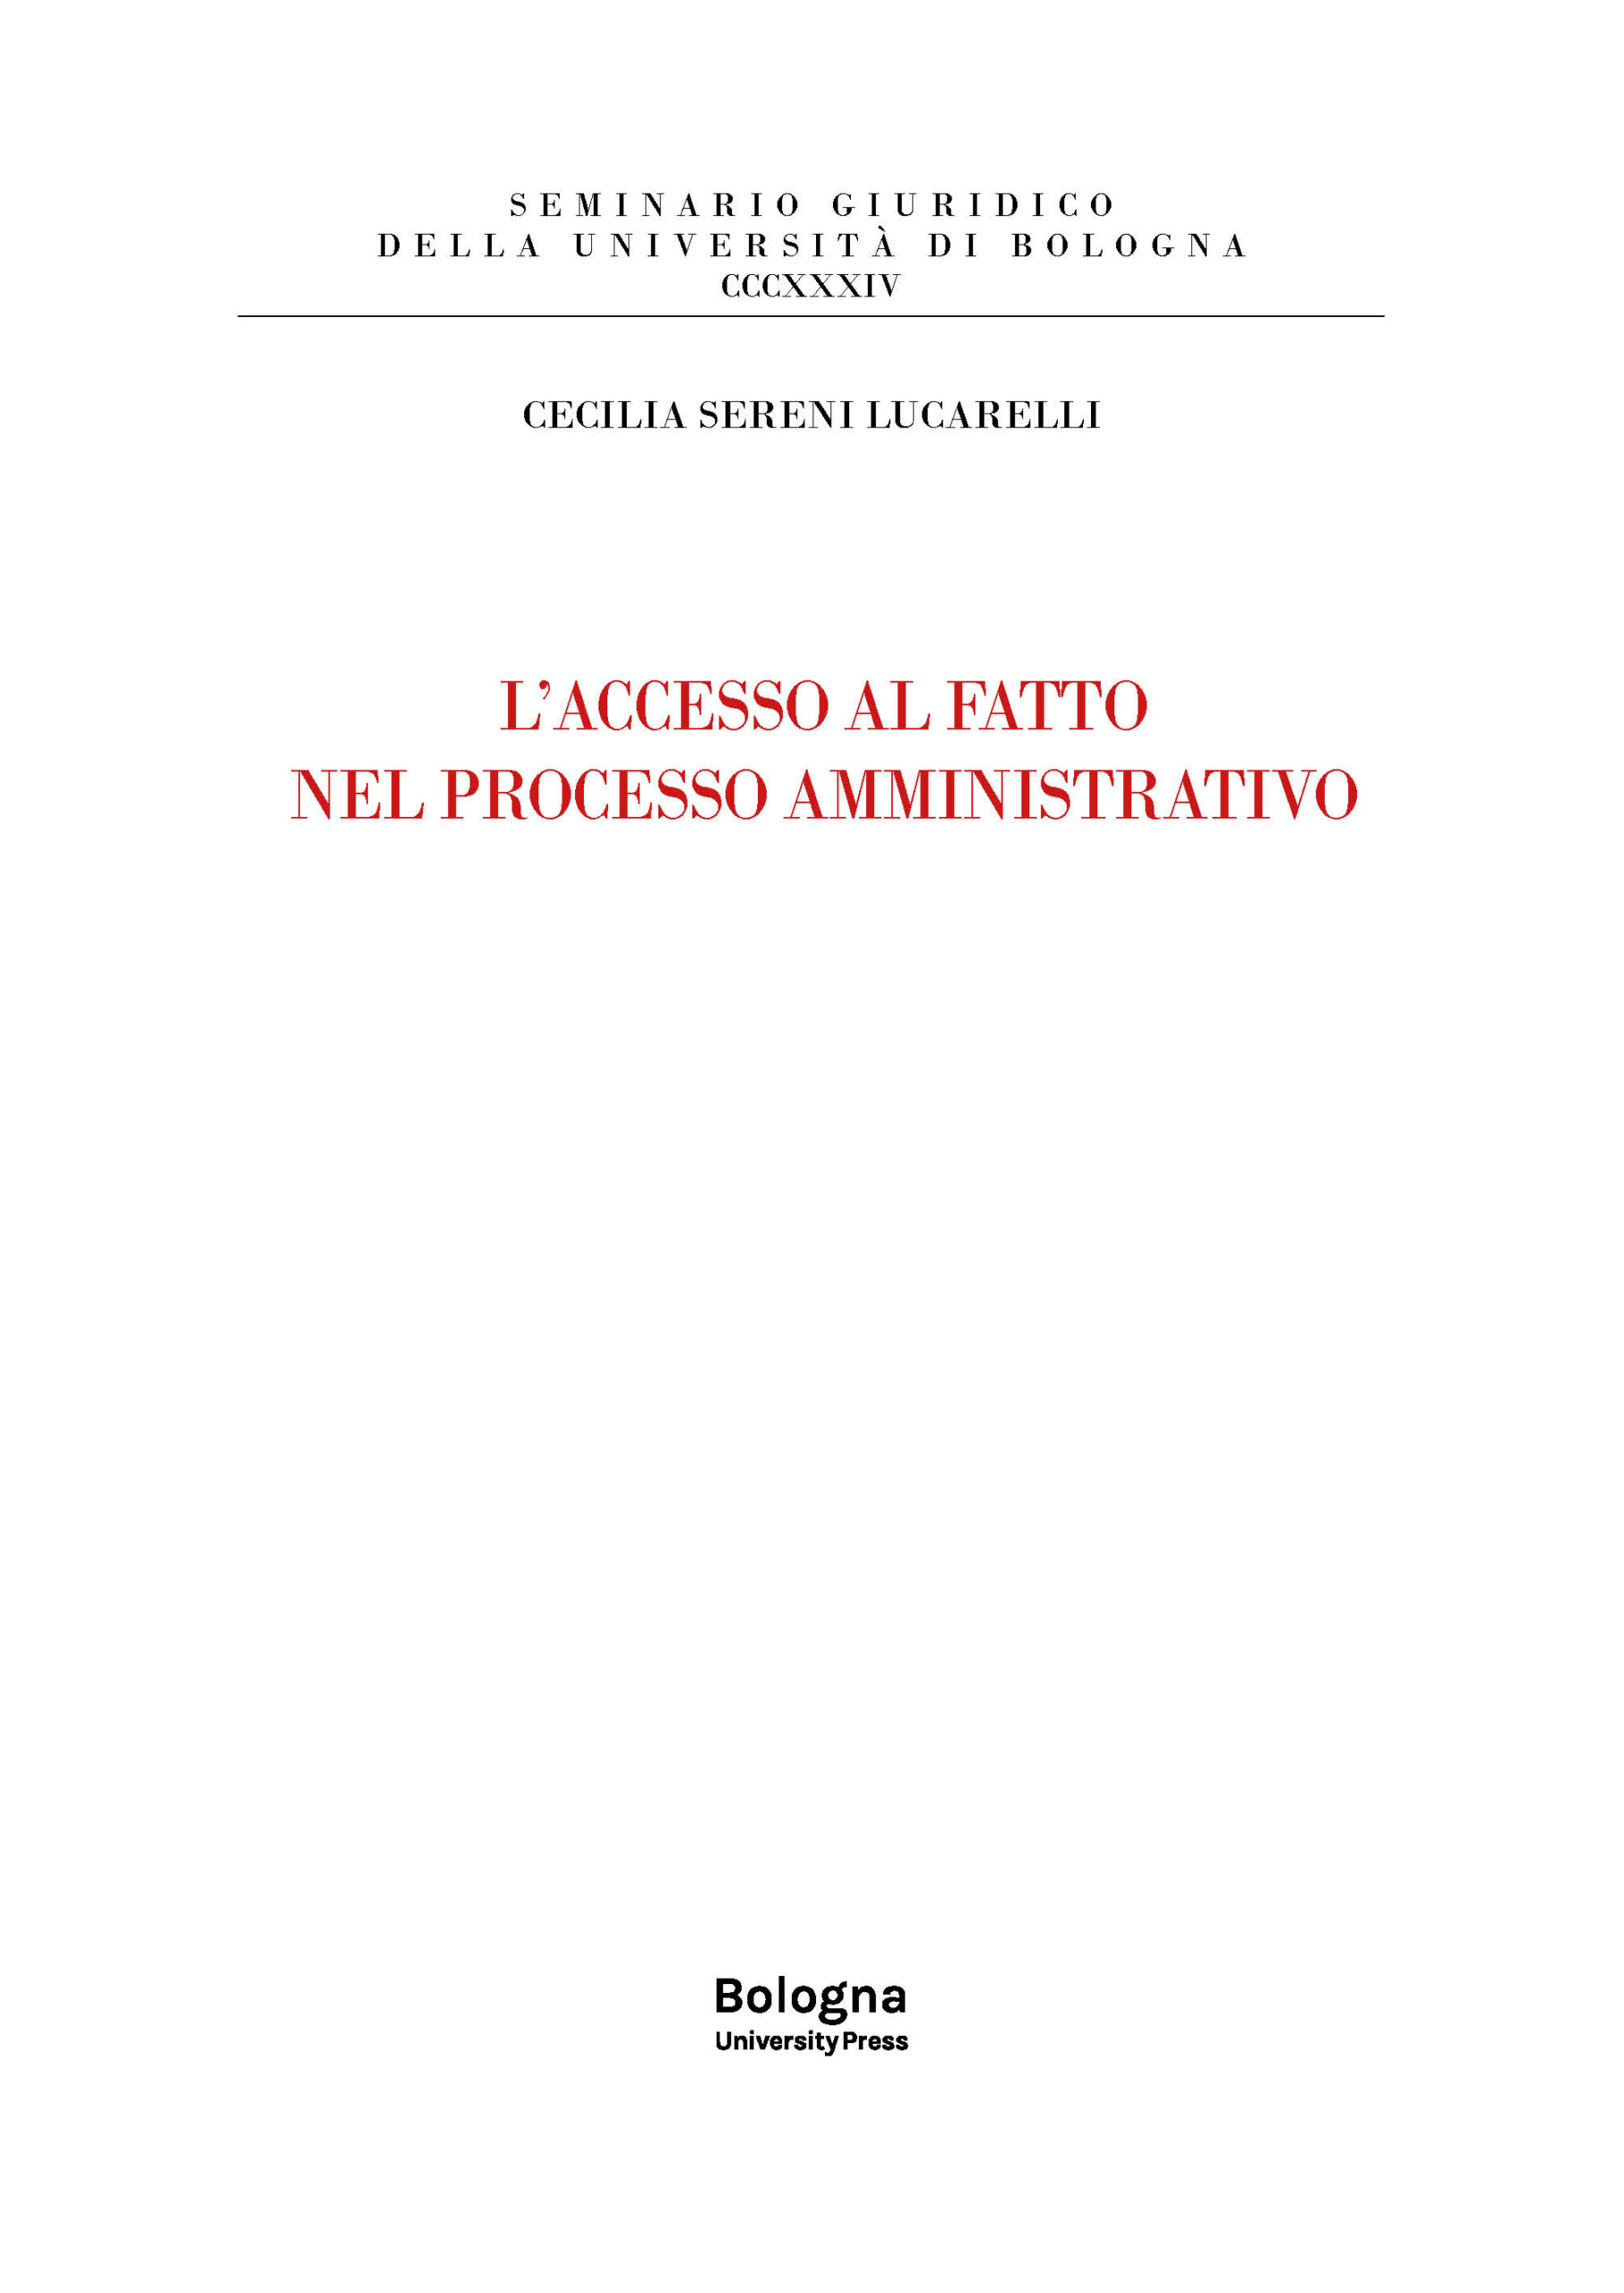 L’accesso al fatto nel processo amministrativo - Bologna University Press